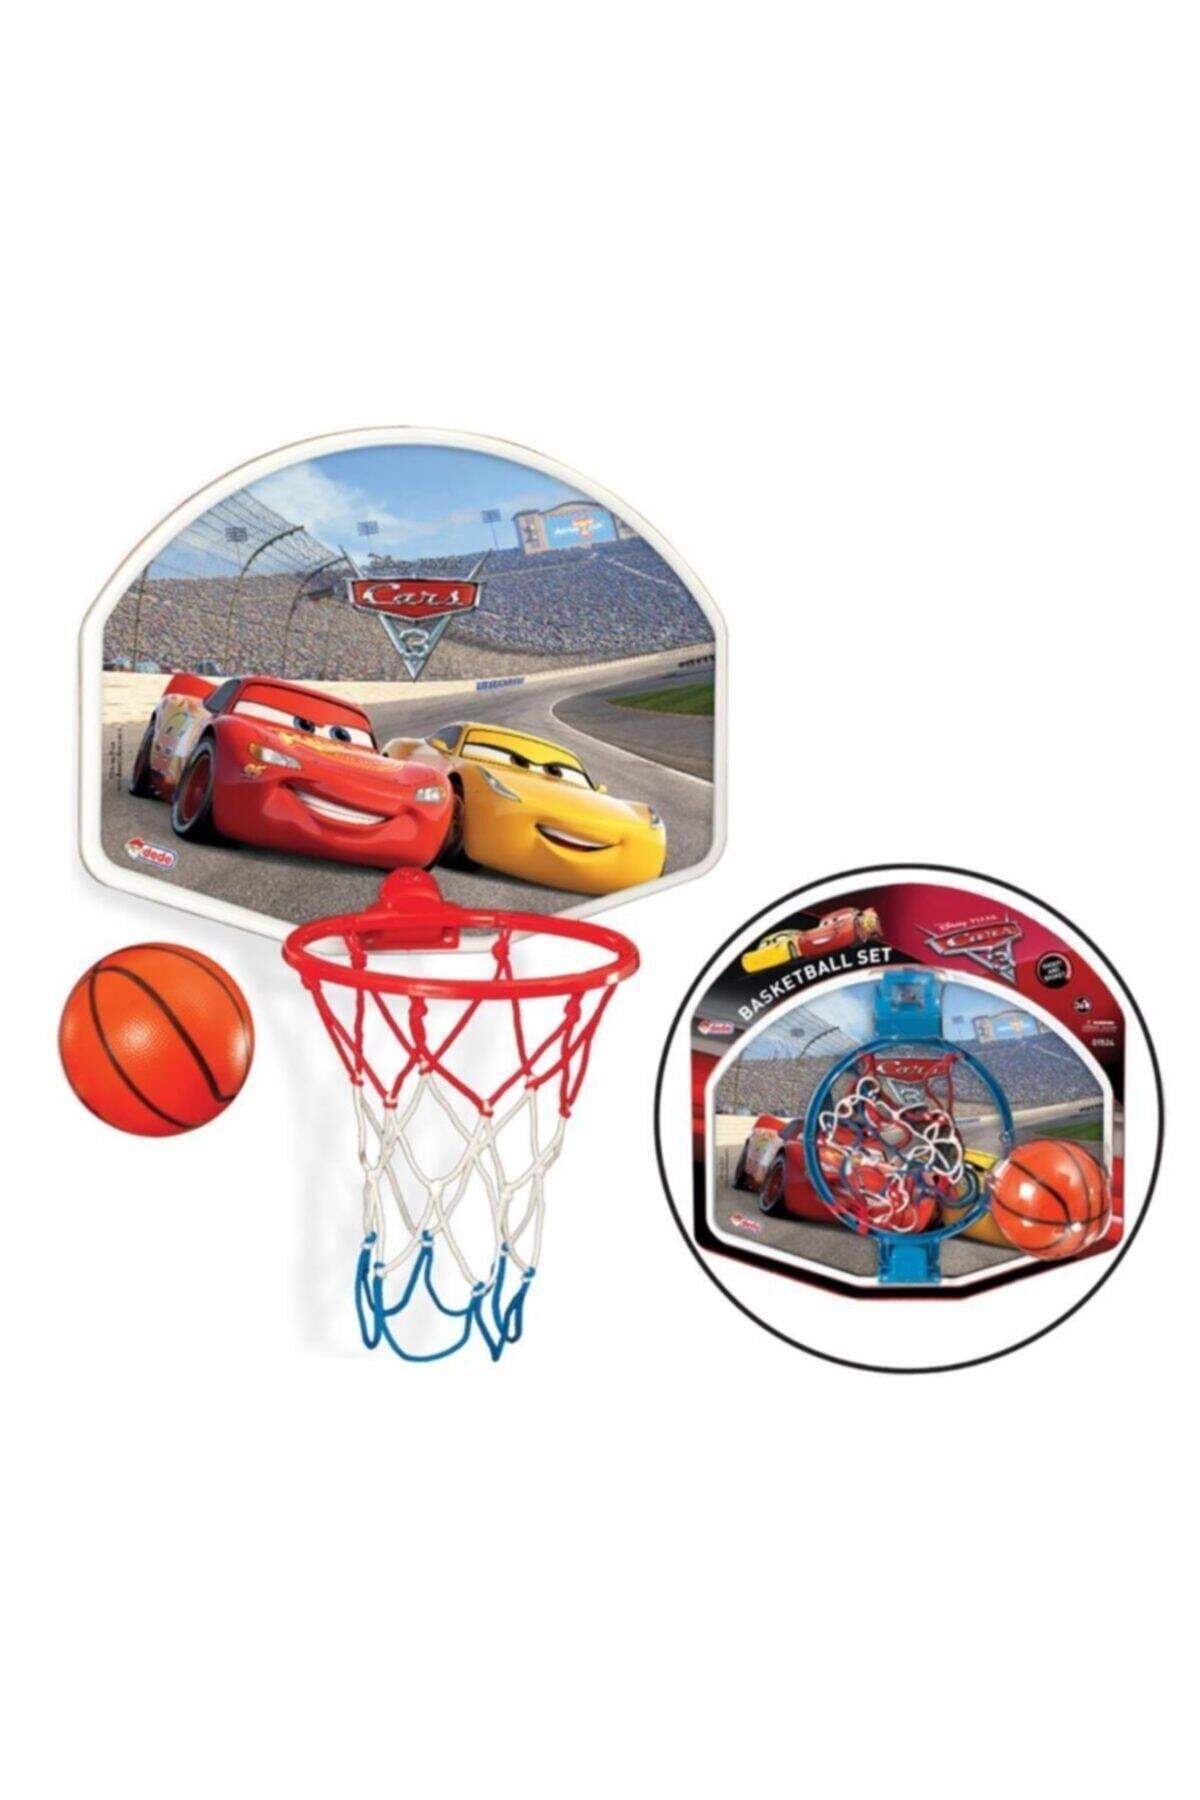 DEDE Cars Basket Potası Orta 01524 5249